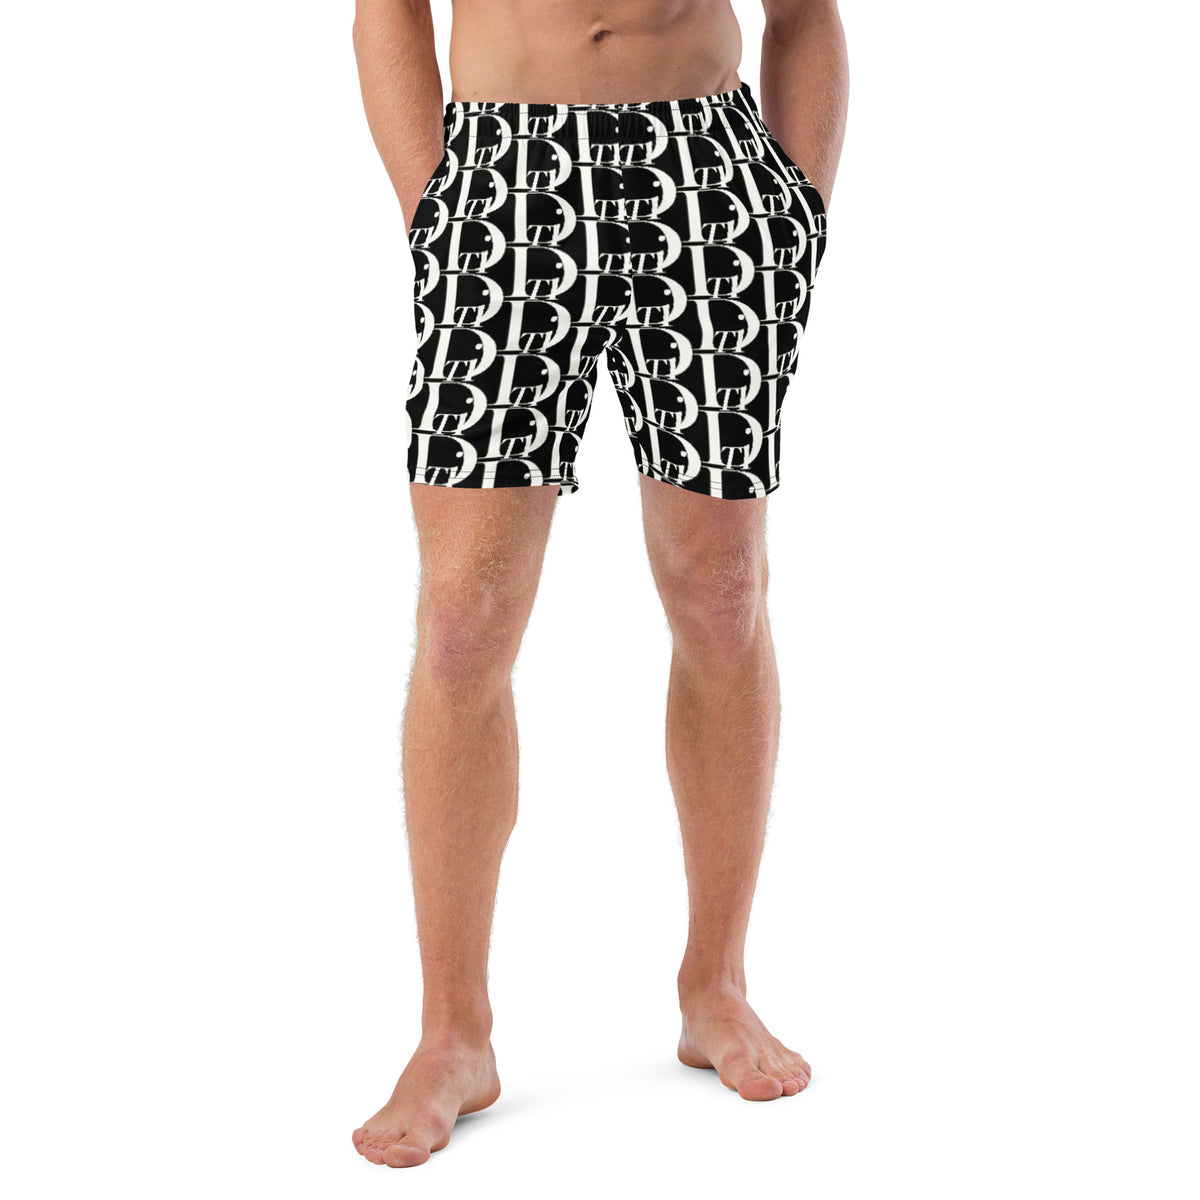 DTI Black/ White Pattern Men's swim trunks – Descendants of the Island